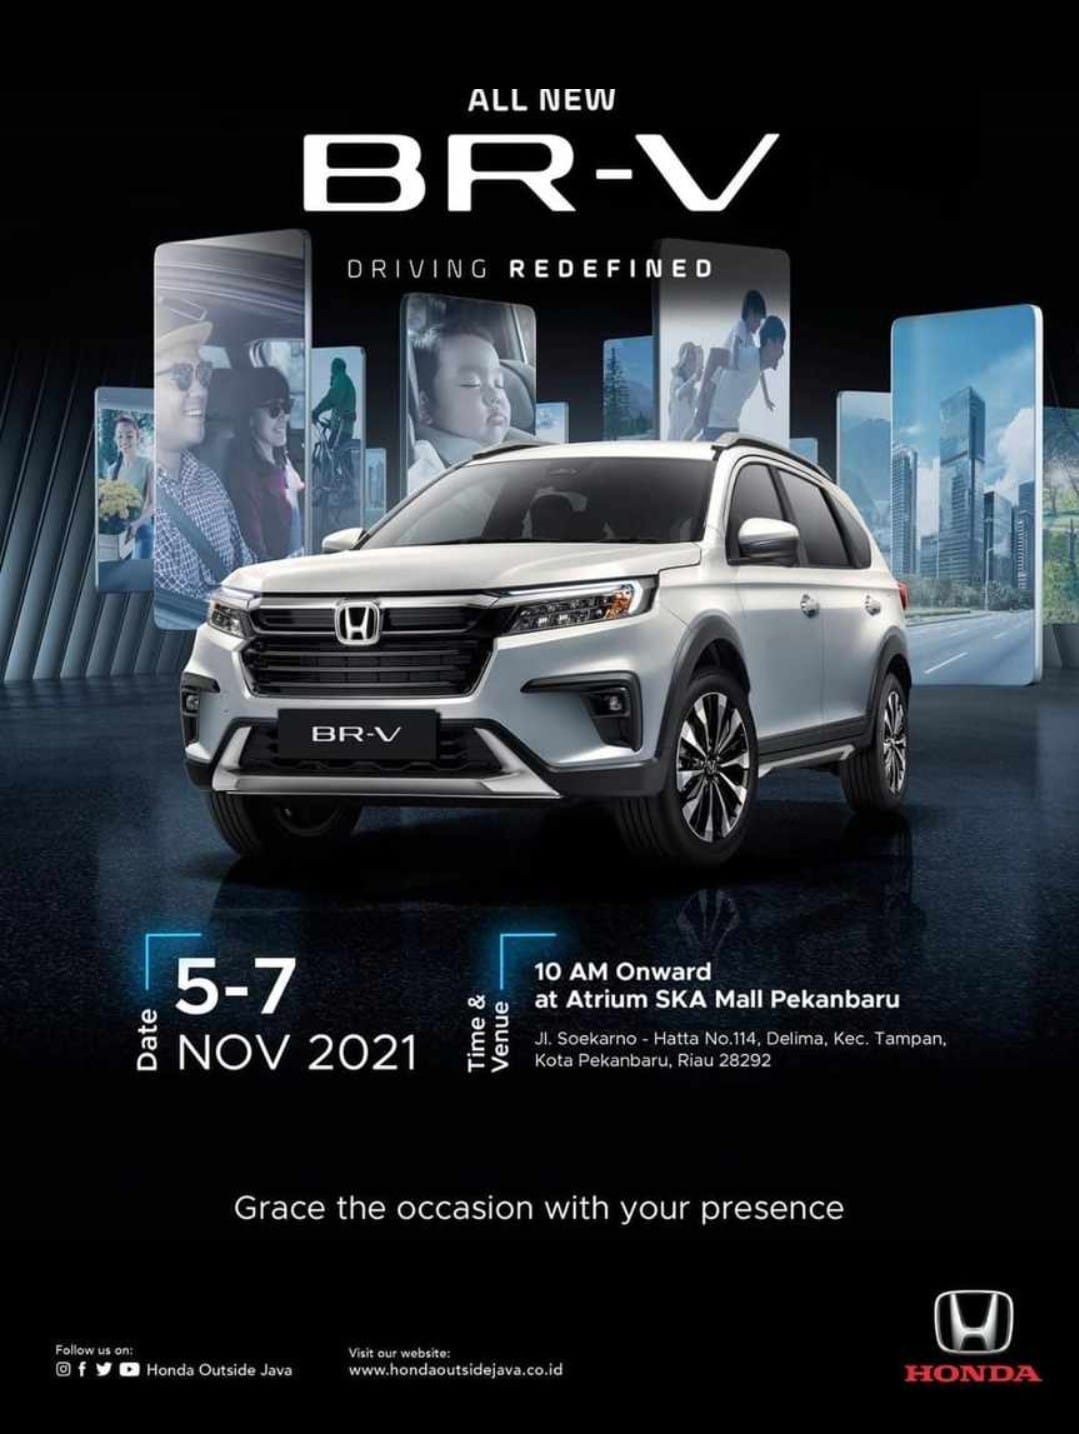 All New Honda BR-V Bakal Diperkenalkan di Pekanbaru pada 5 hingga 7 November